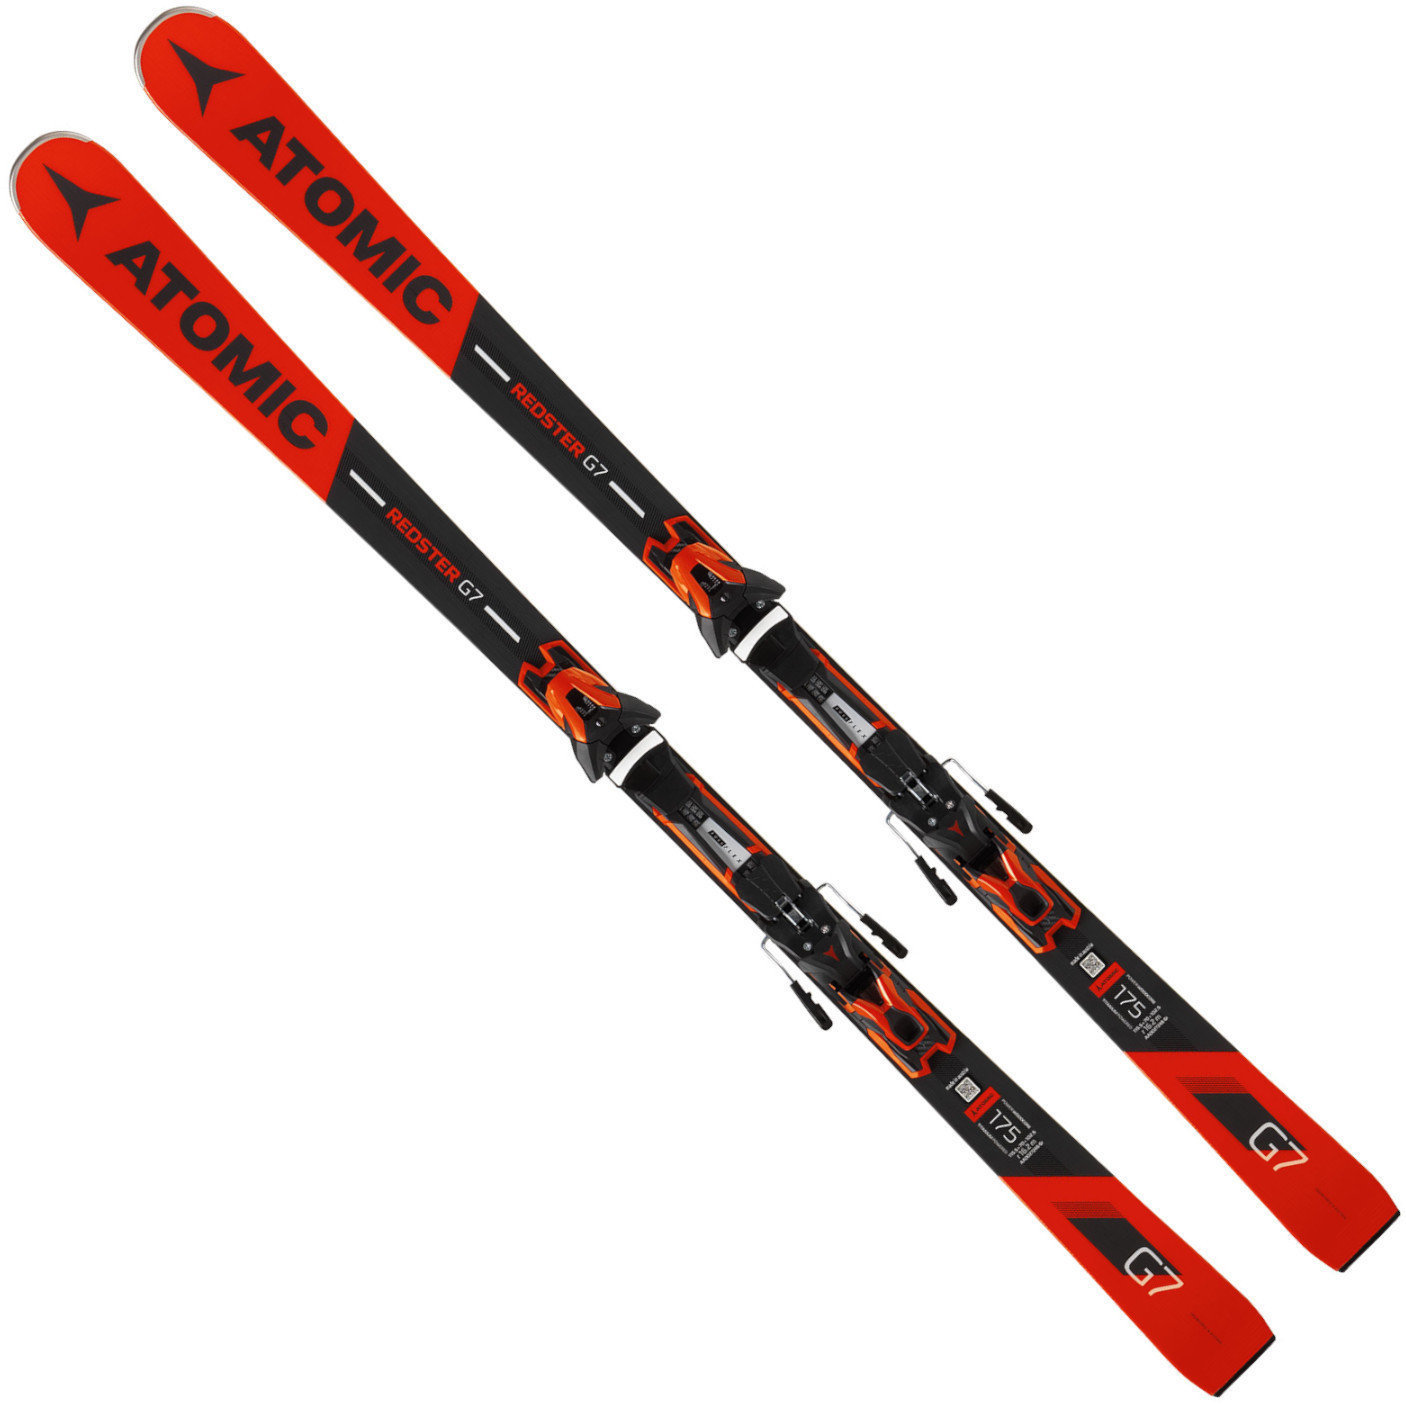 Ski Atomic Redster G7 + FT 12 GW 175 18/19 skis